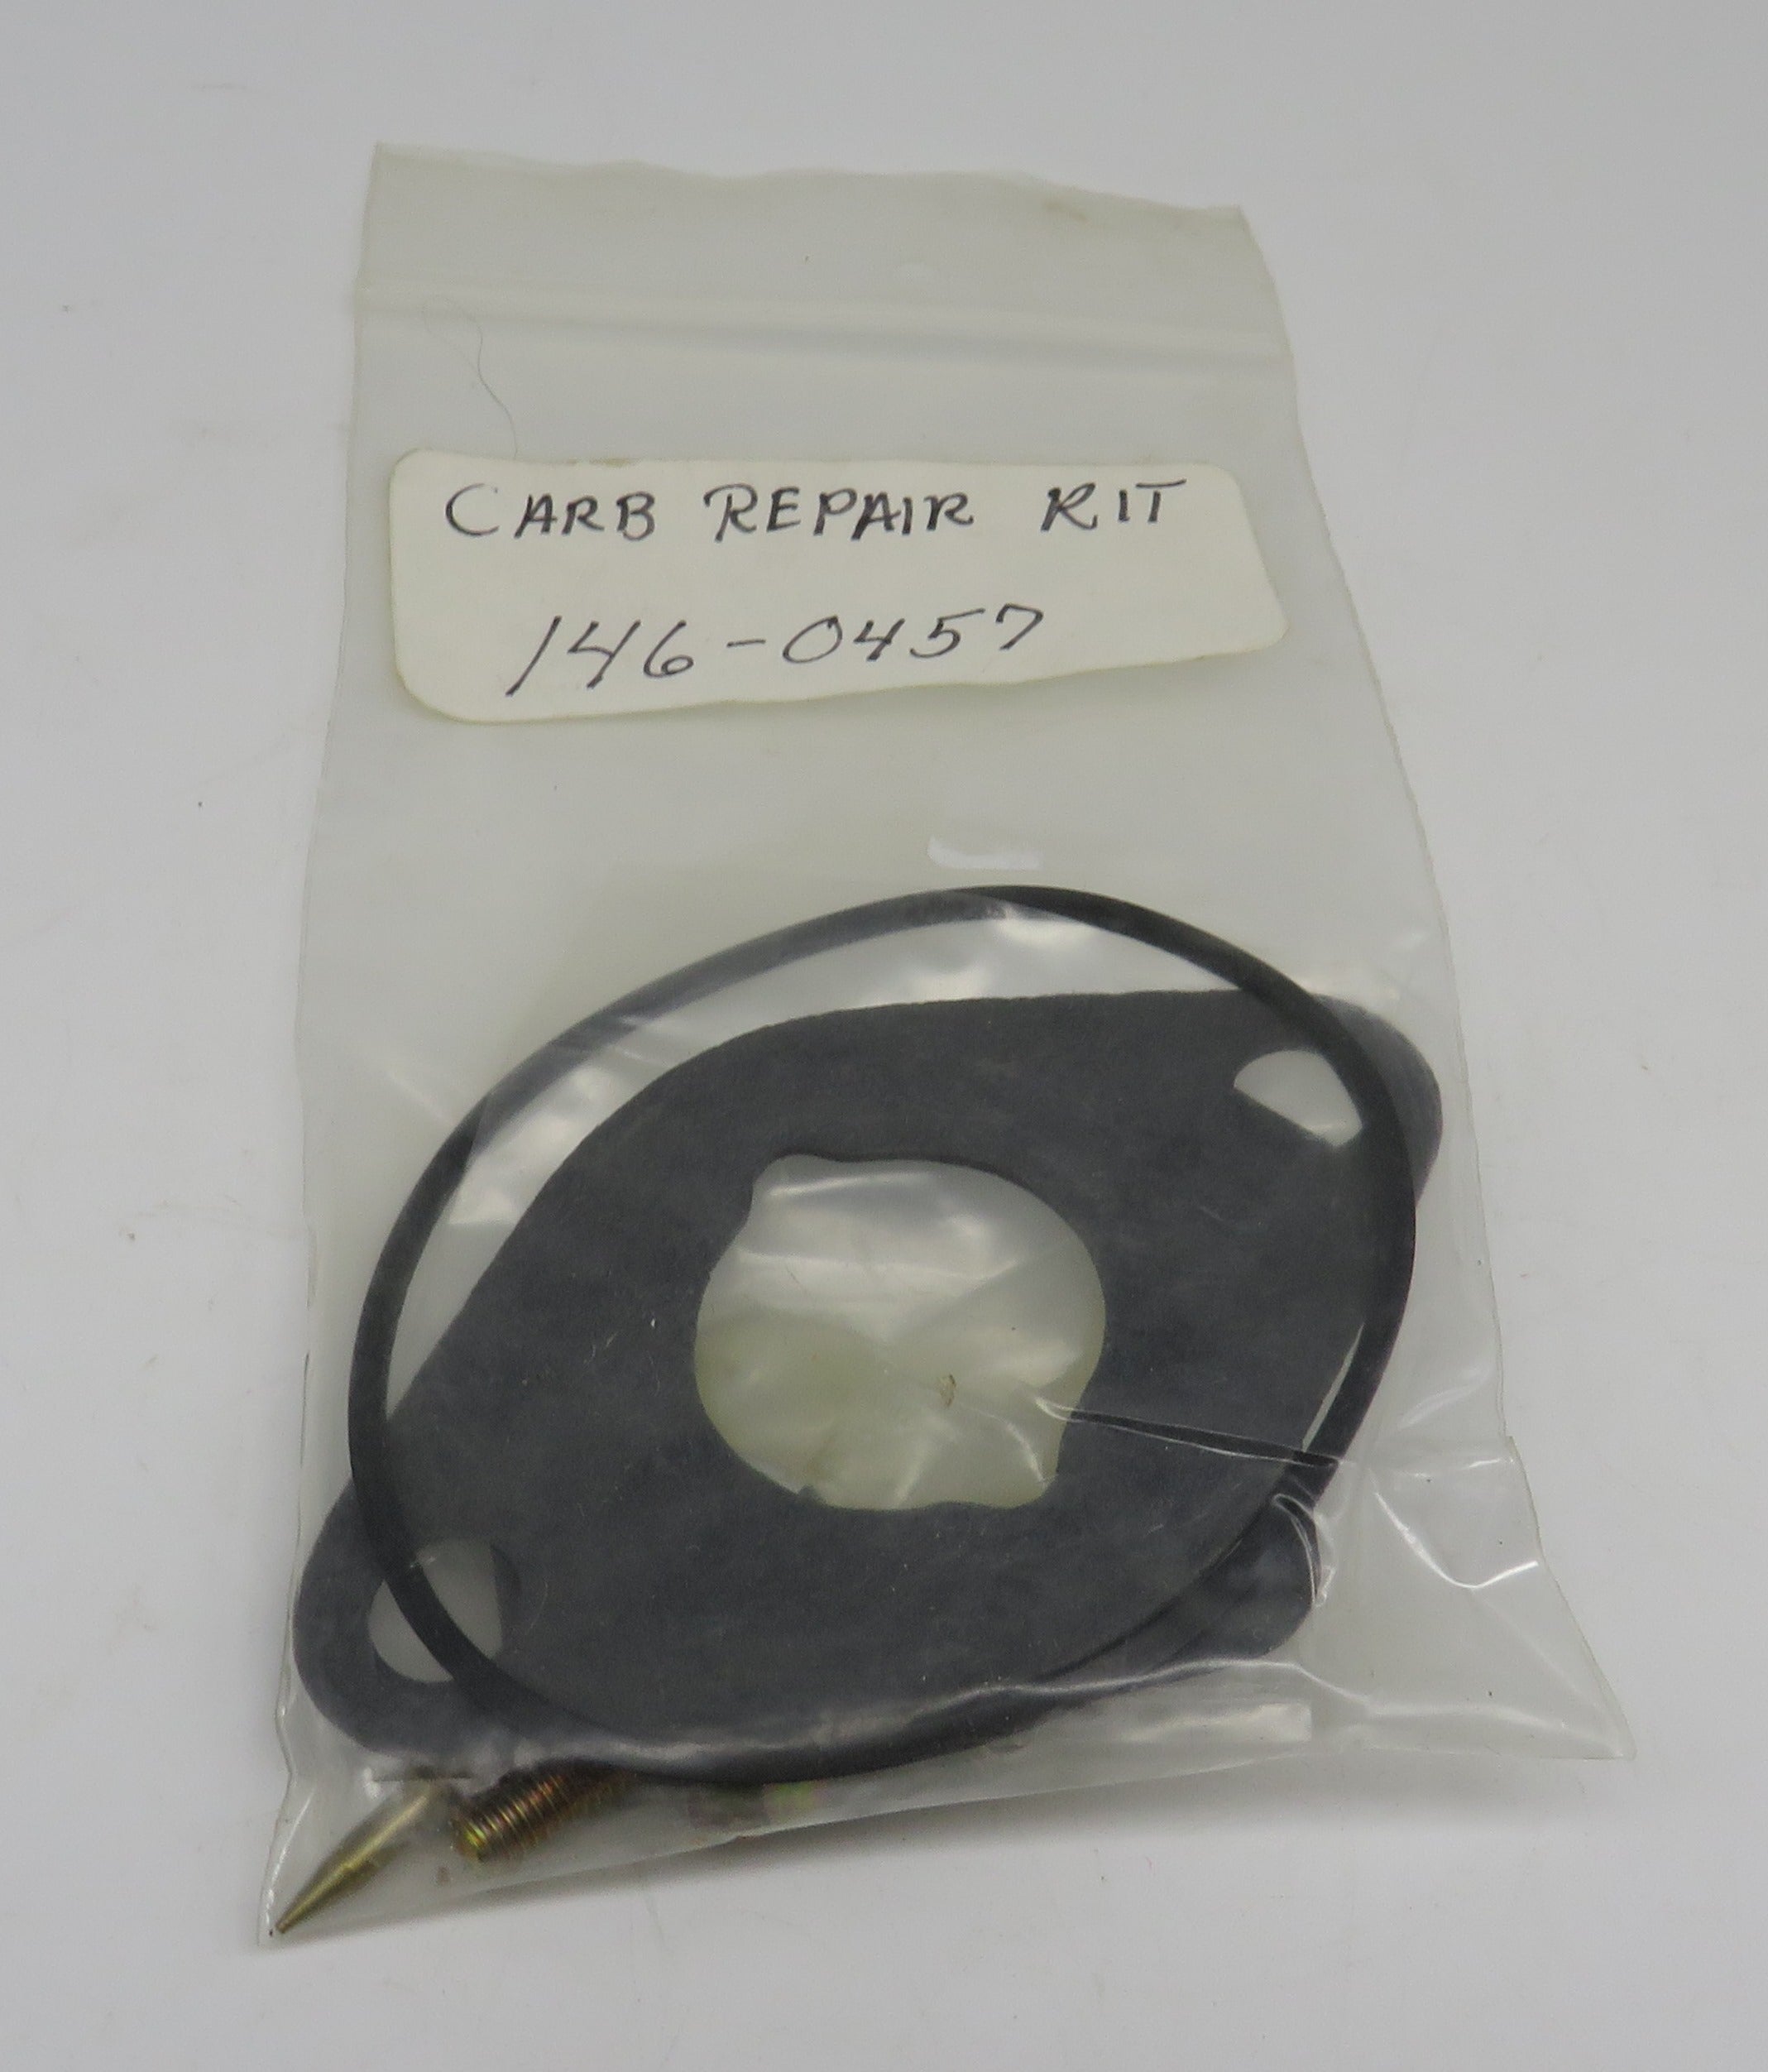 146-0457 Onan Carburetor Repair Kit for RV Genset for Onan 146-0528 Carburetor 